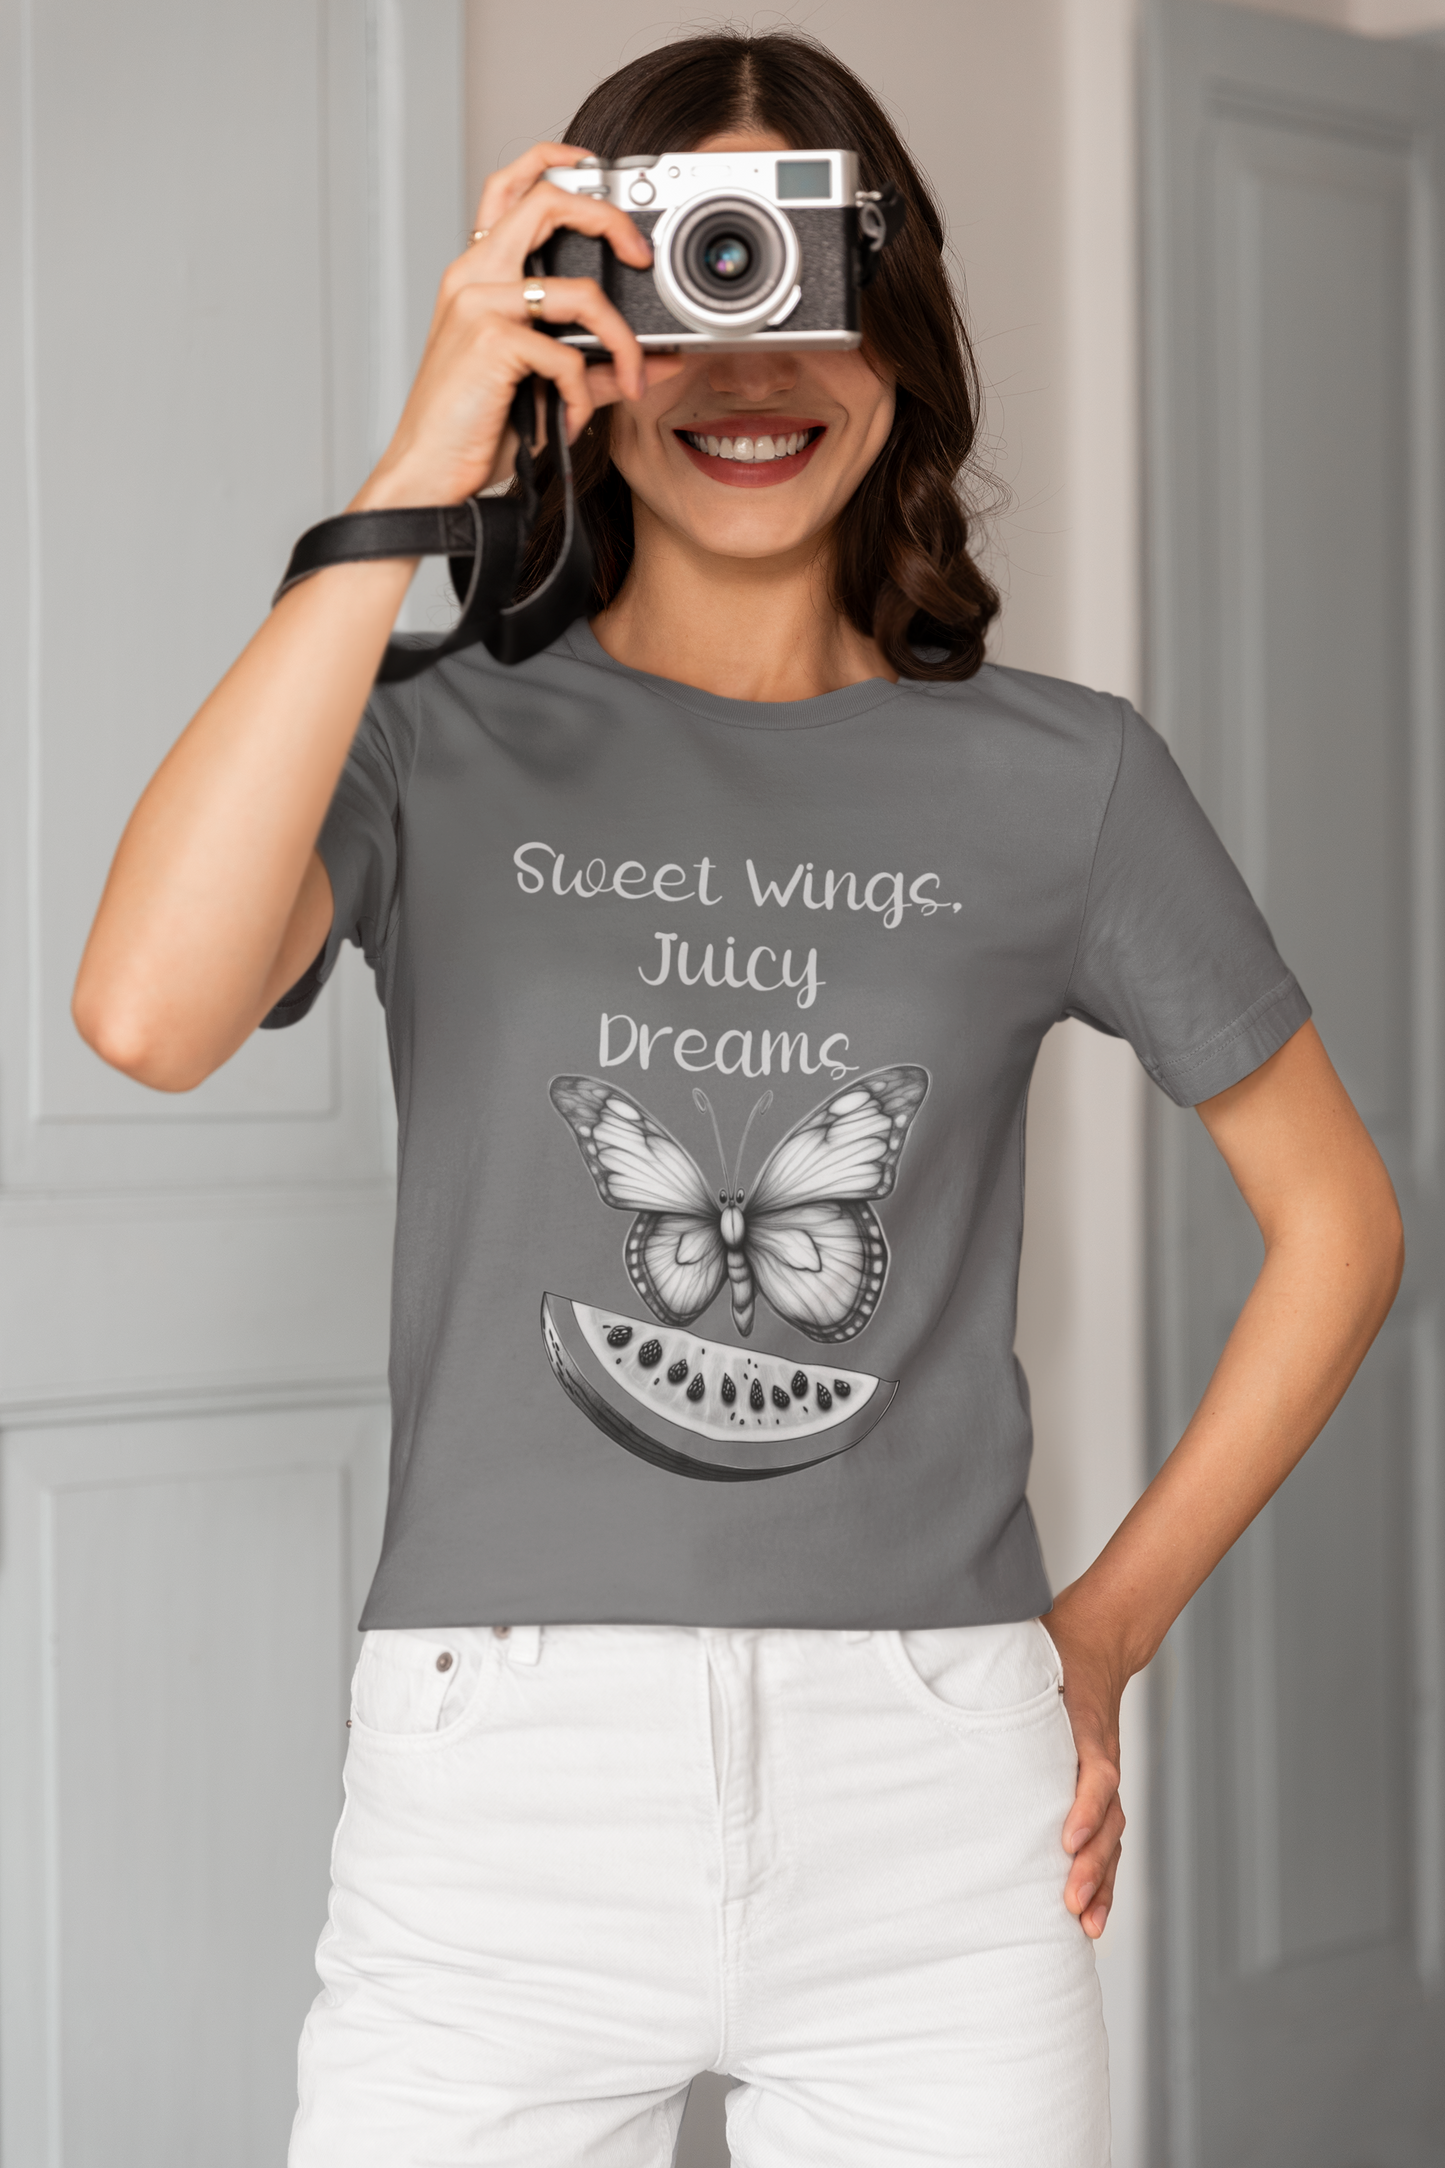 Vintage Wassermelonen-Schmetterlings-T-Shirt – „Sweet Wings, Juicy Dreams“ – Retro-Grafik-T-Shirt